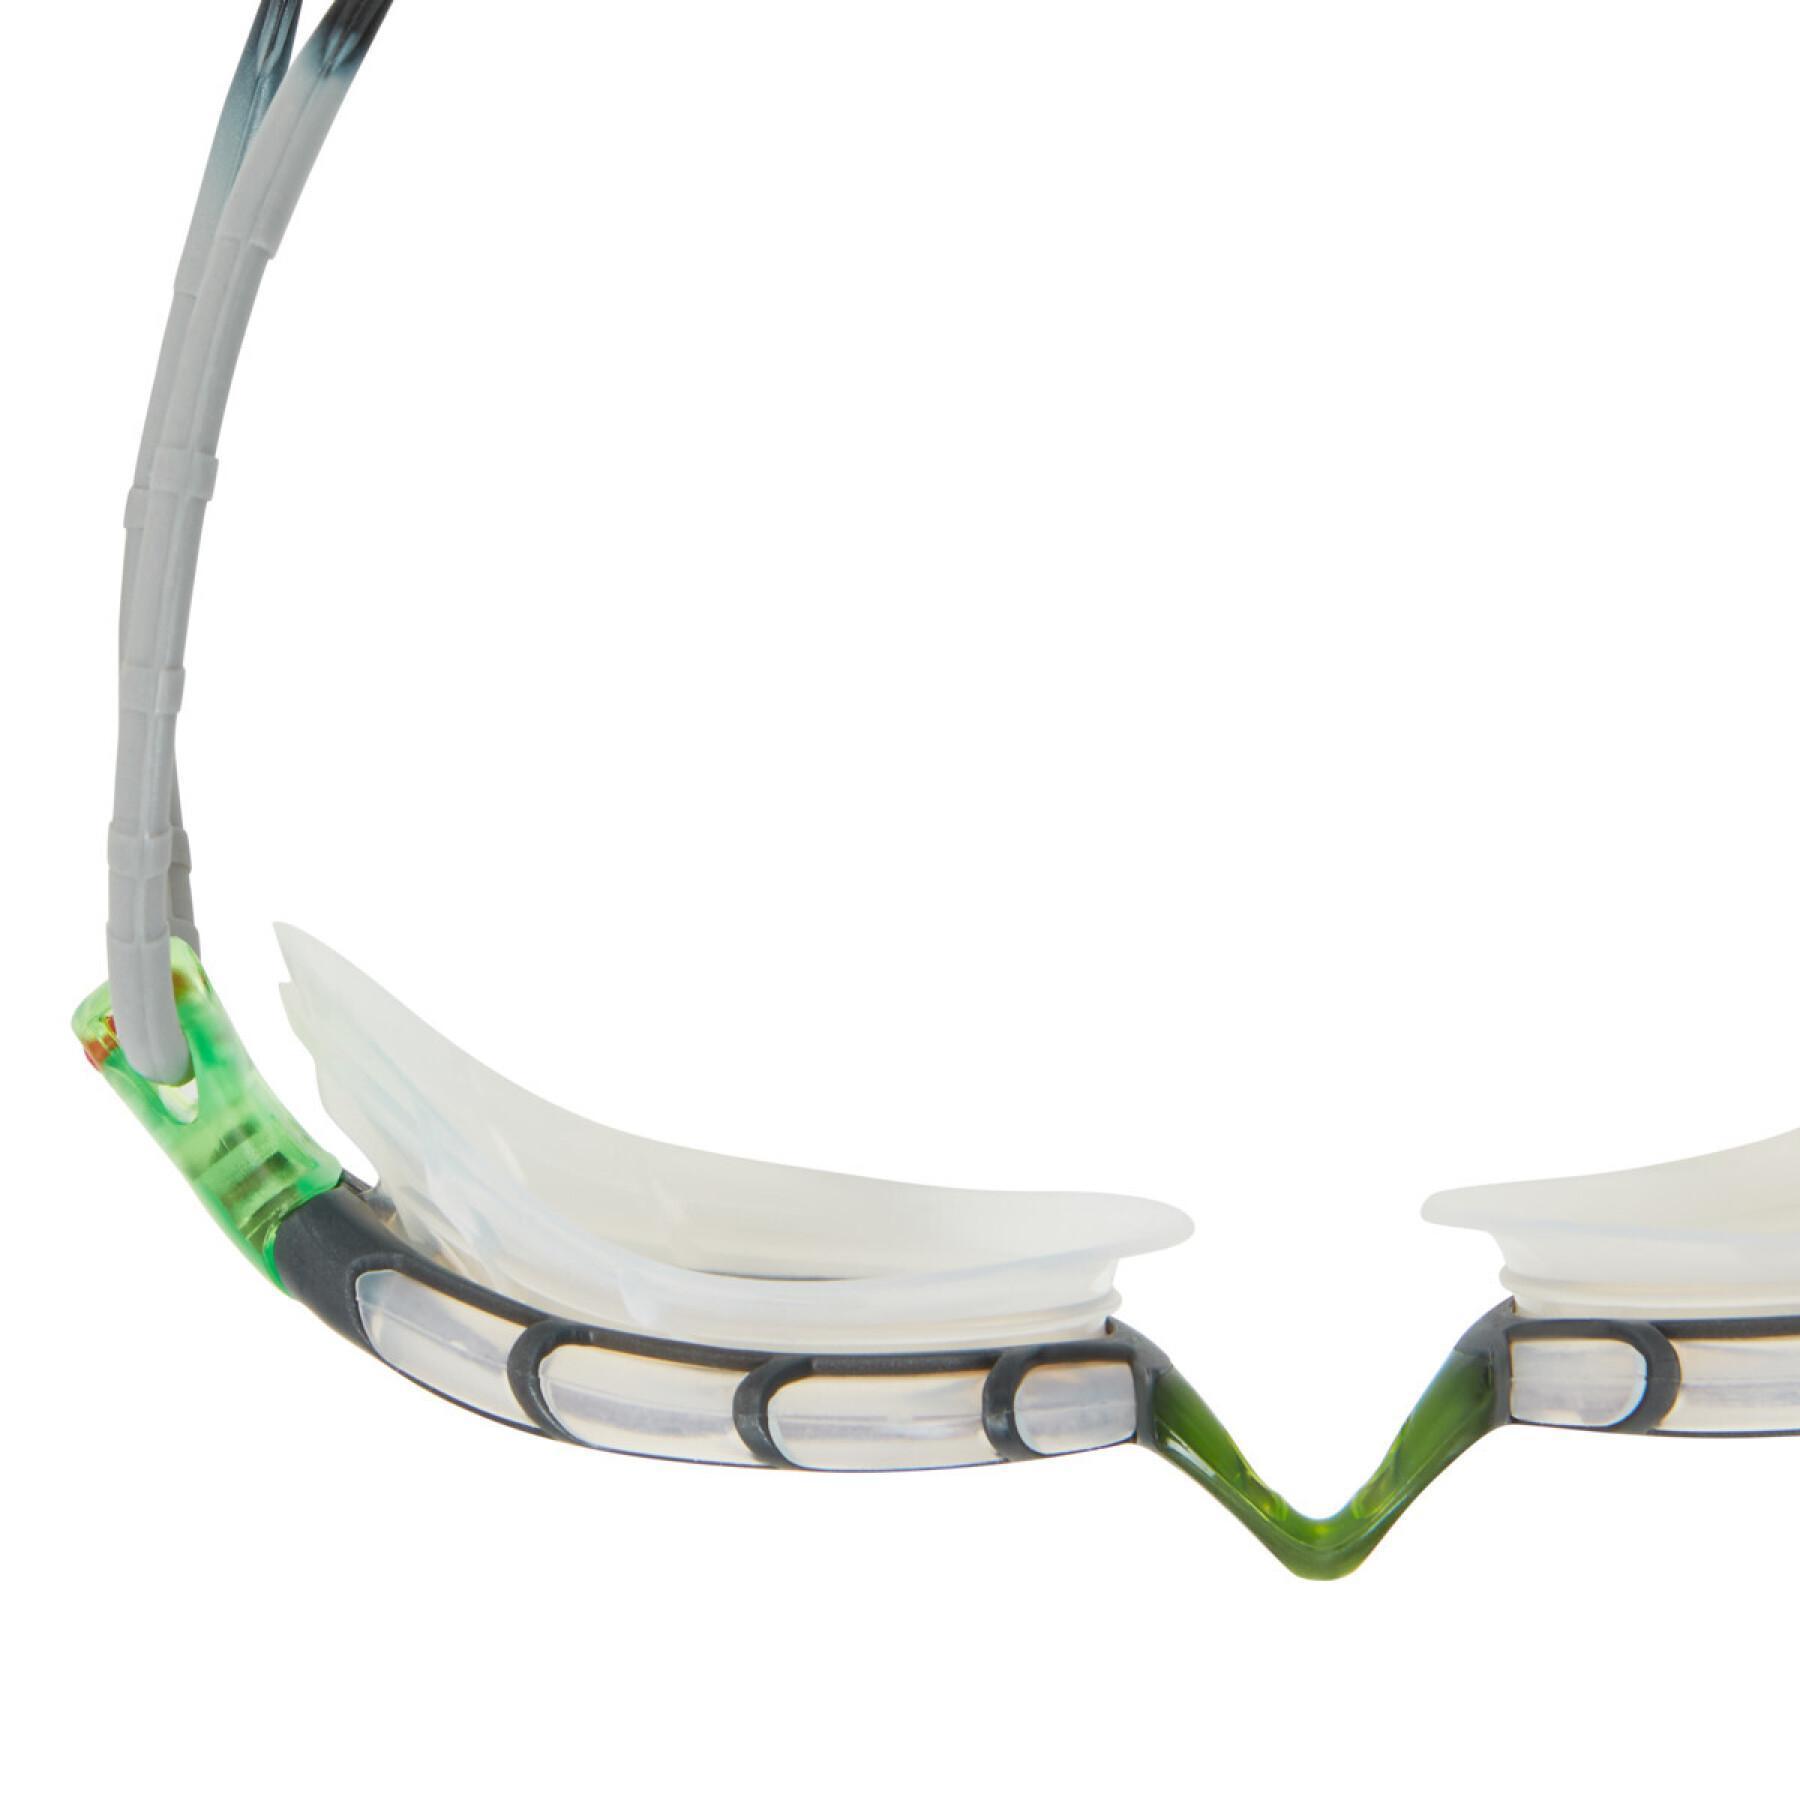 Occhialini da nuoto Zoggs Predator Polarized Ultra (R)